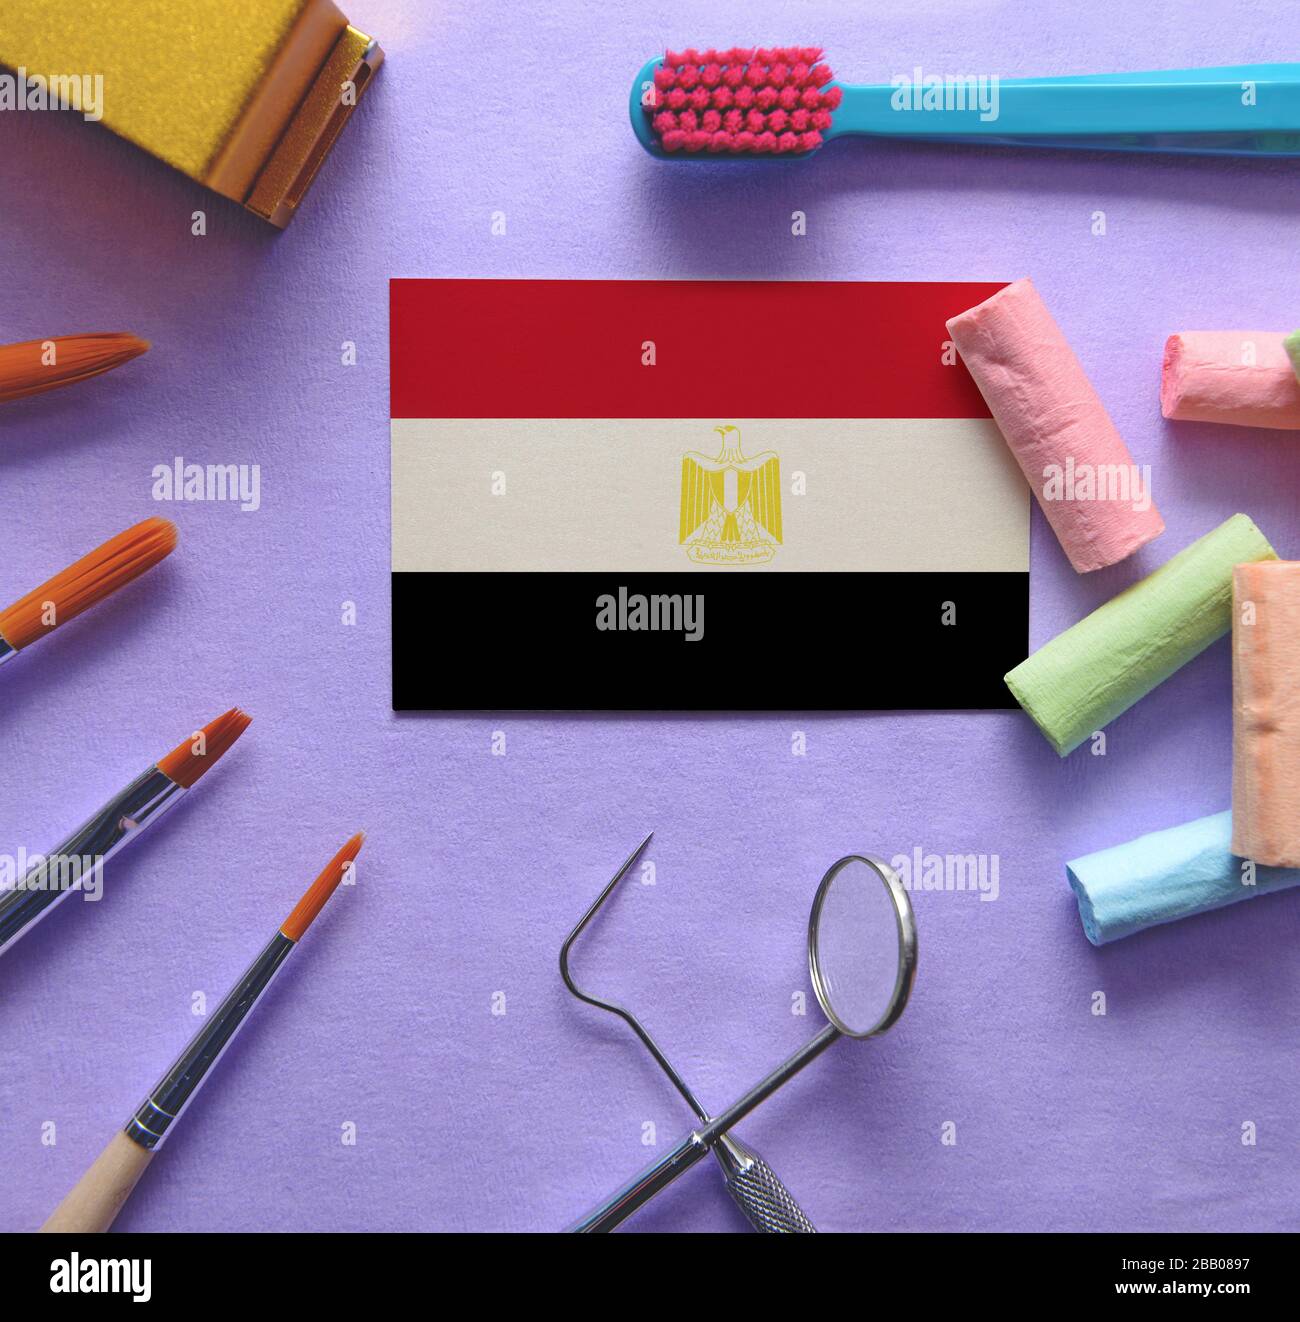 Zahnarztkonzept mit Instrumenten - konzeptionelles Bild des zahnärztlichen Gesundheitssystems Ägyptens Stockfoto